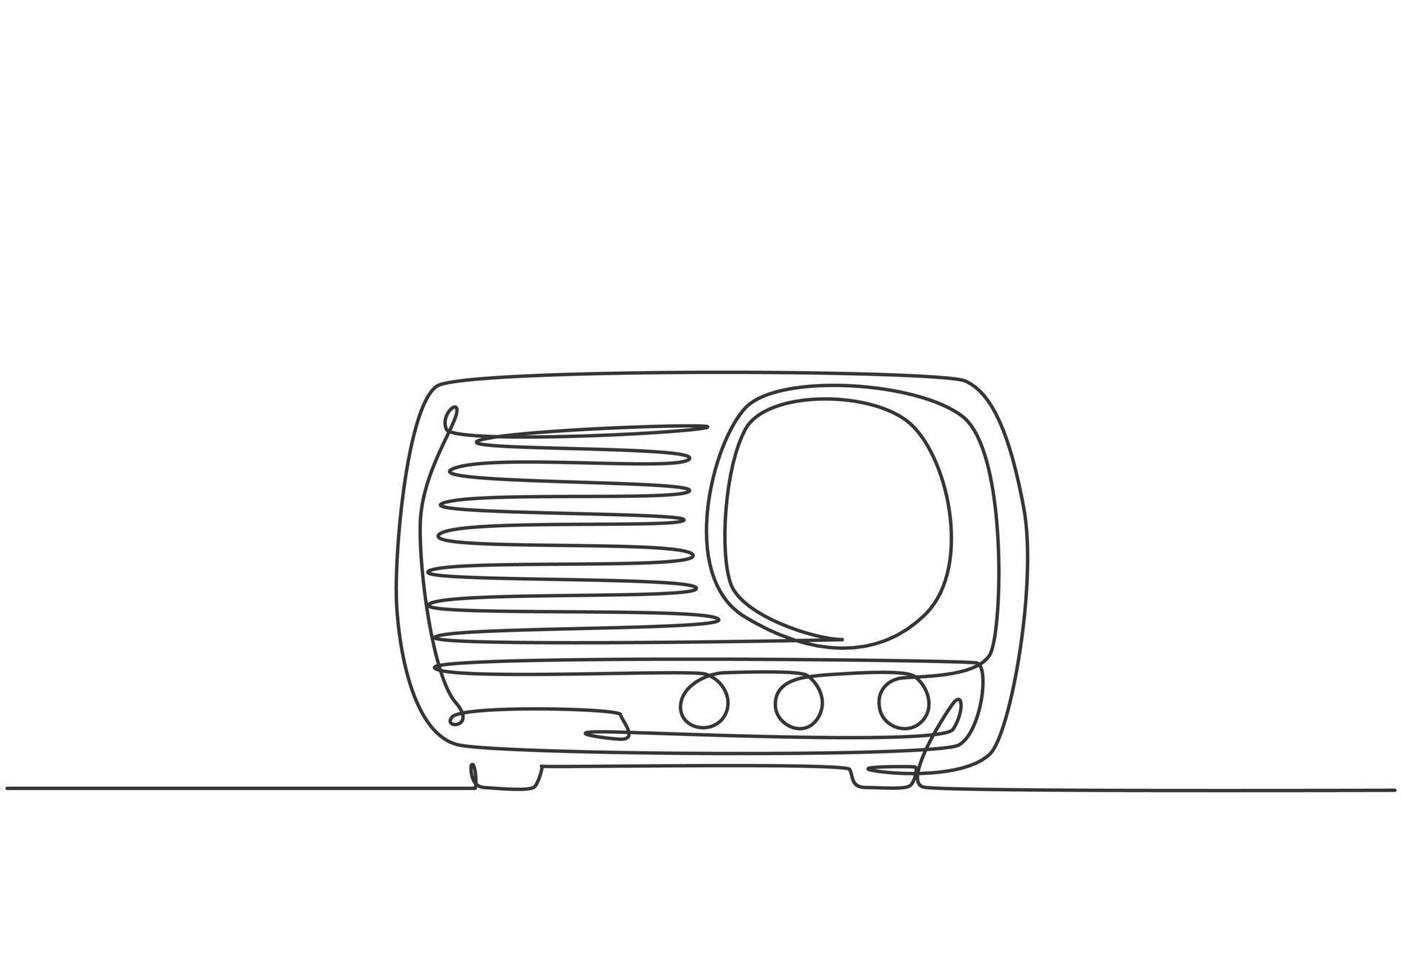 een doorlopende lijntekening van retro oude klassieke radiospeler. vintage analoge audio luidspreker item concept enkele lijn tekenen ontwerp vector grafische illustratie